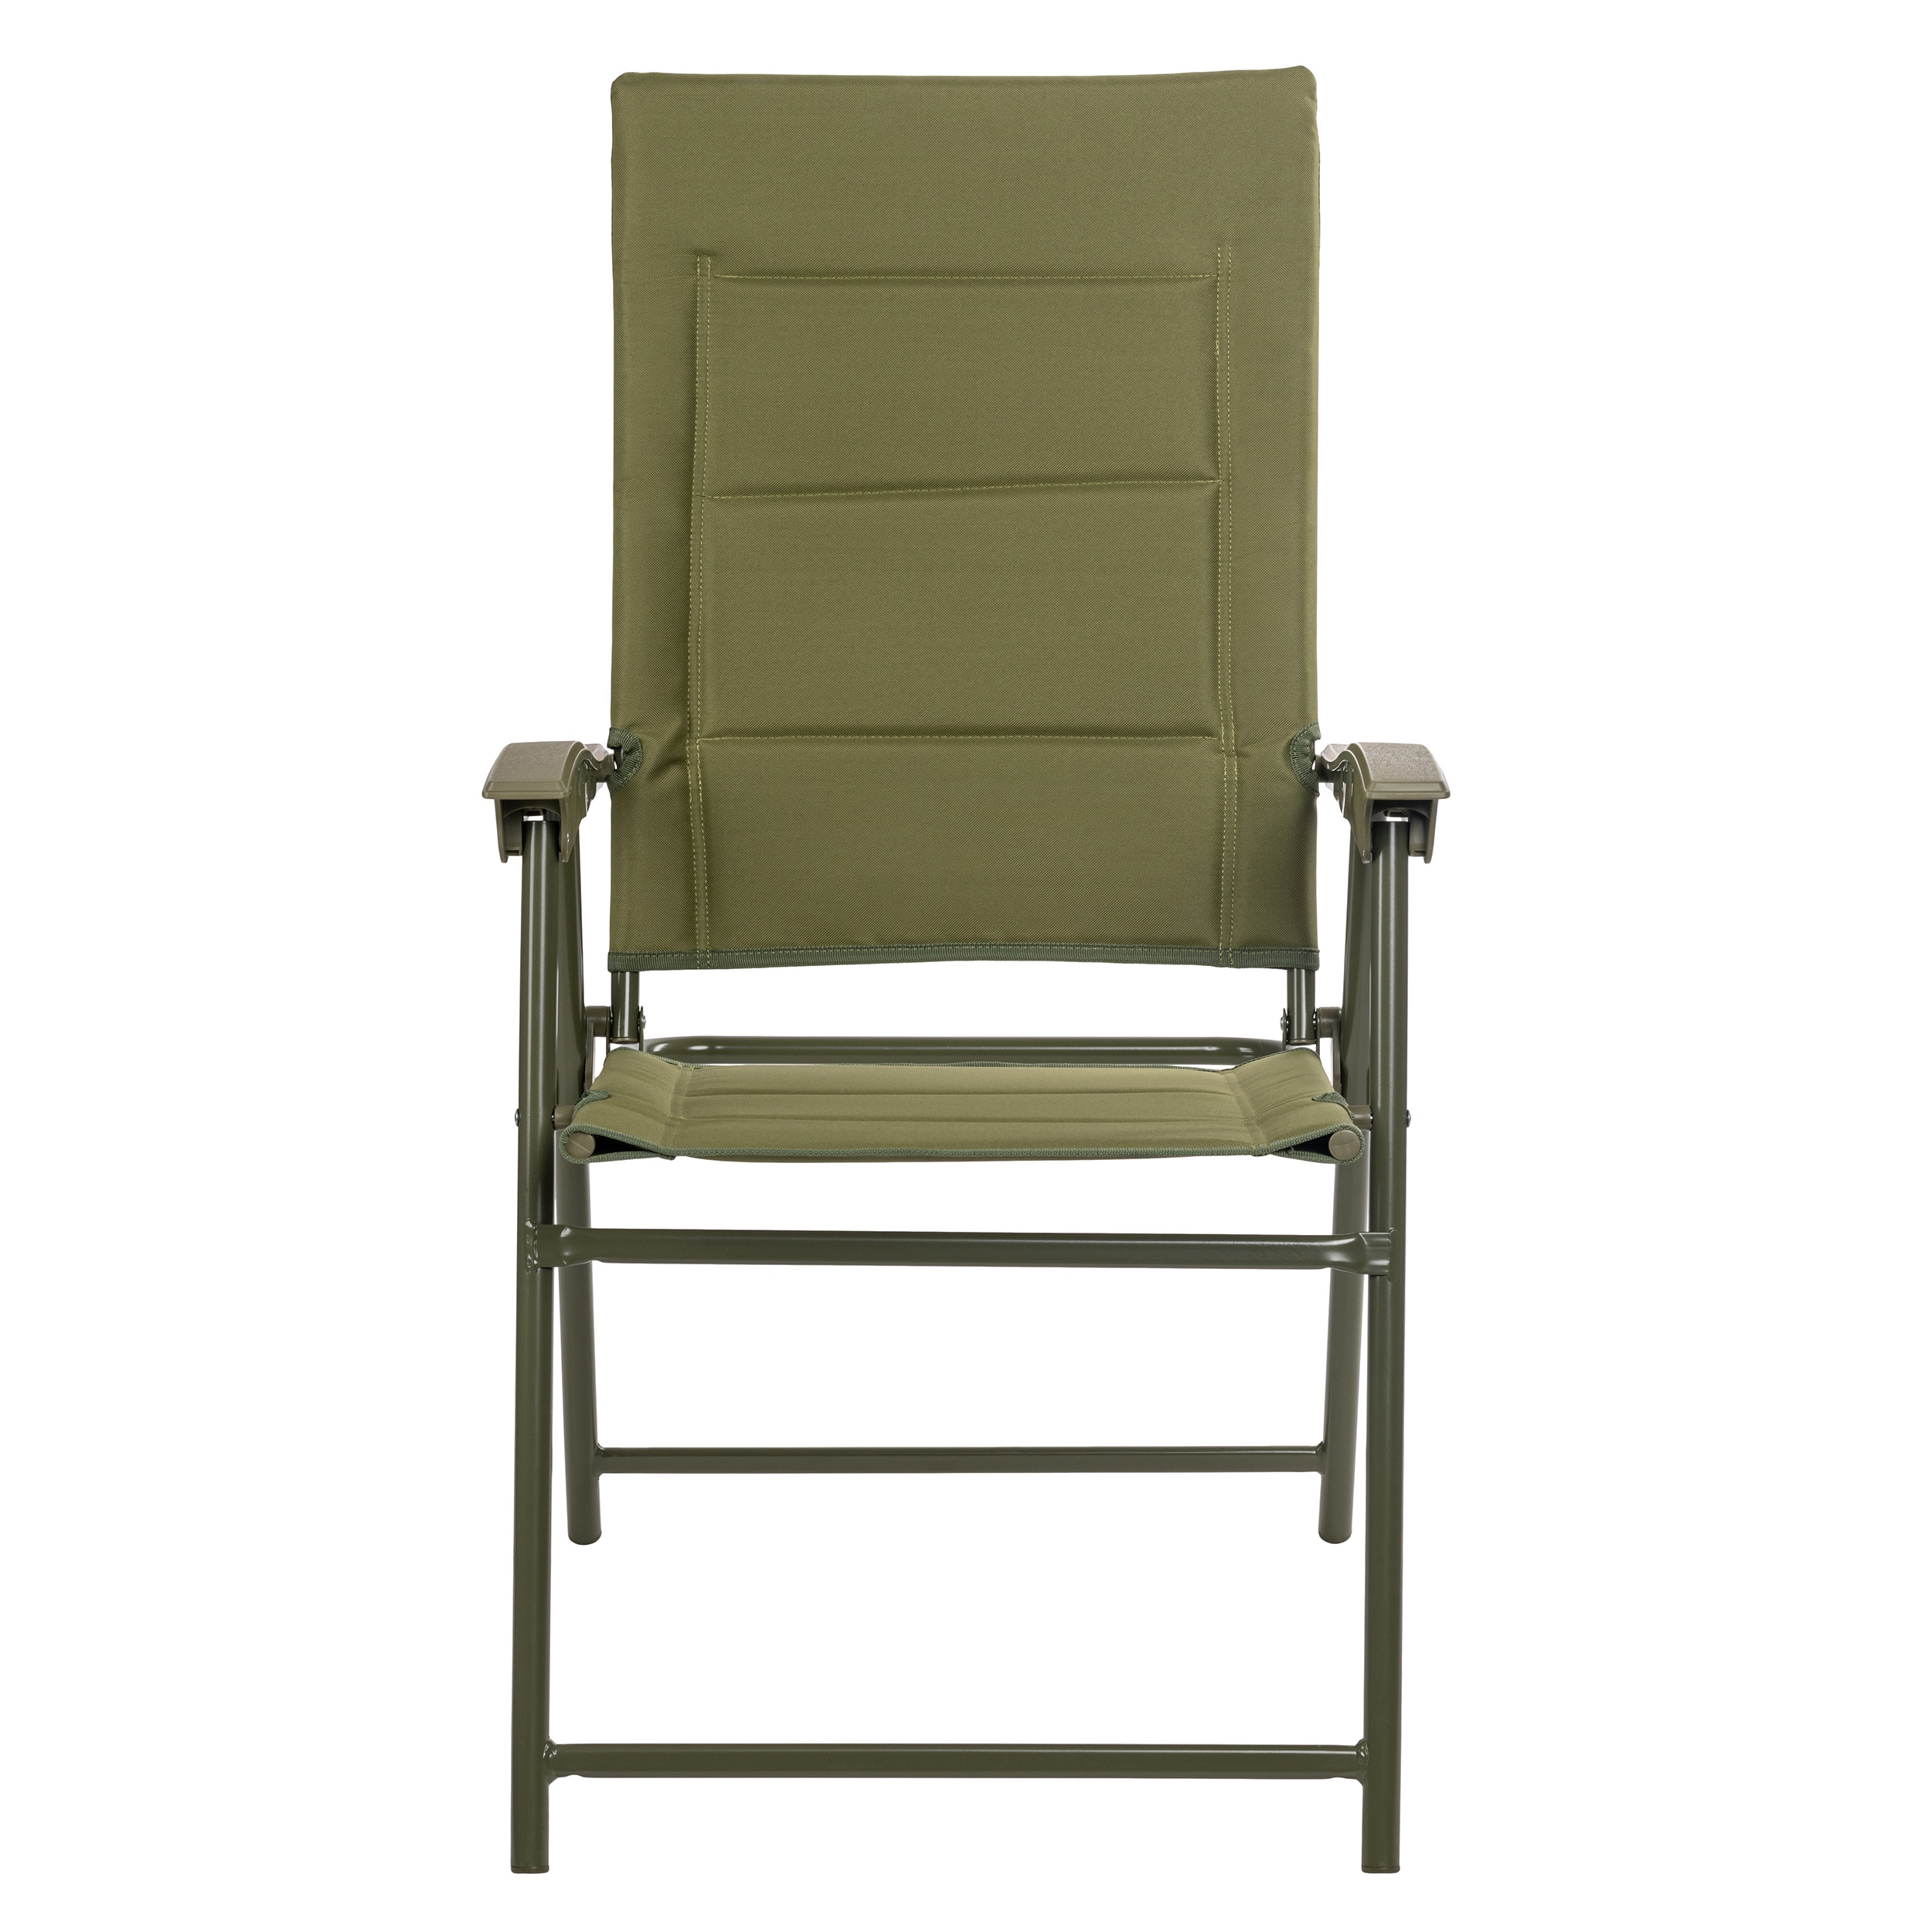 Krzesło składane turystyczne Mil-Tec Army - Olive